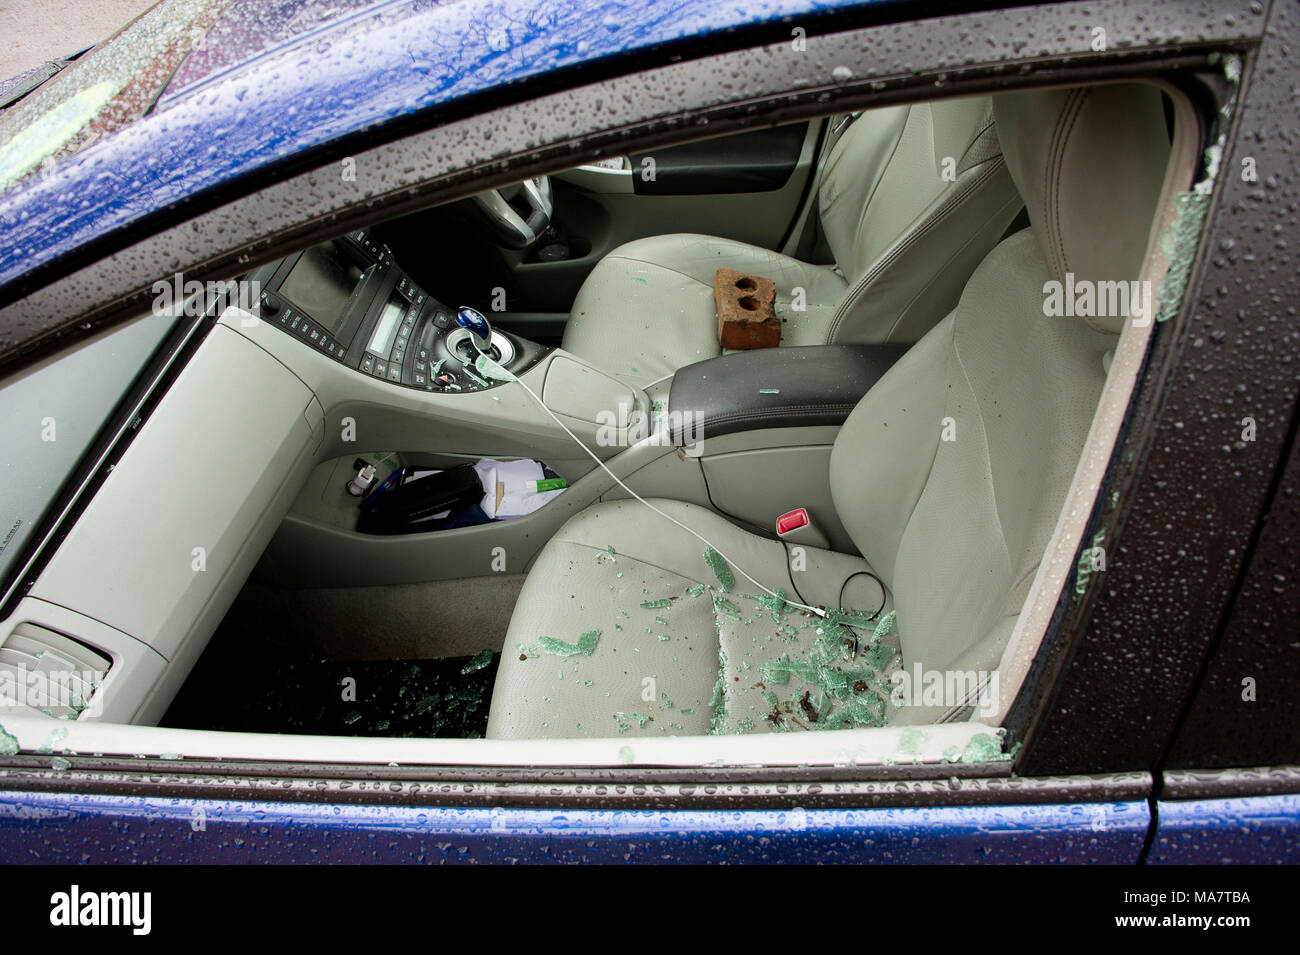 Una vettura rotto recentemente in con mattone incriminato visibile sul sedile di guida - parcheggiata su una strada di Londra Foto Stock